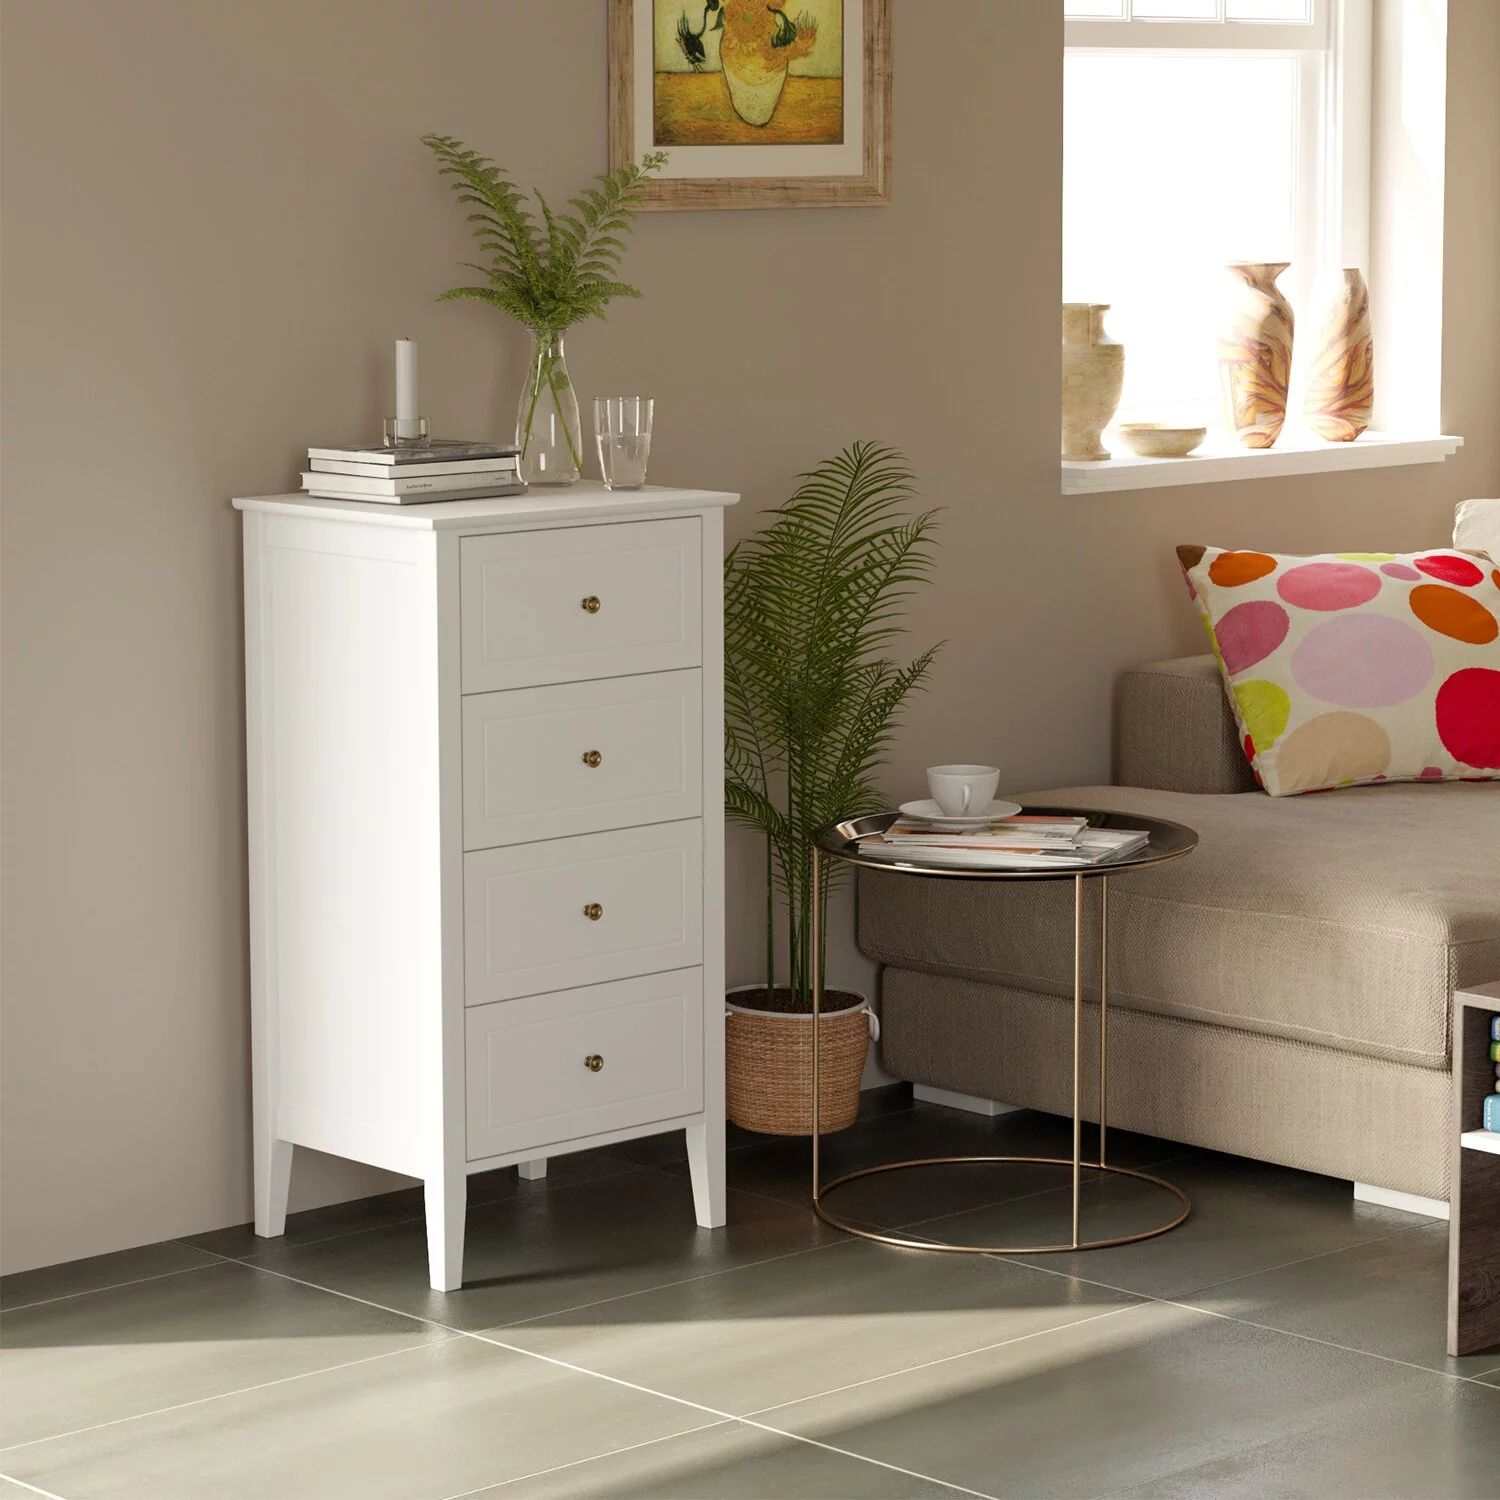 Homfa 4 Drawers Dresser, Modern Nightstand for Bedroom Livingroom, White | Walmart (US)